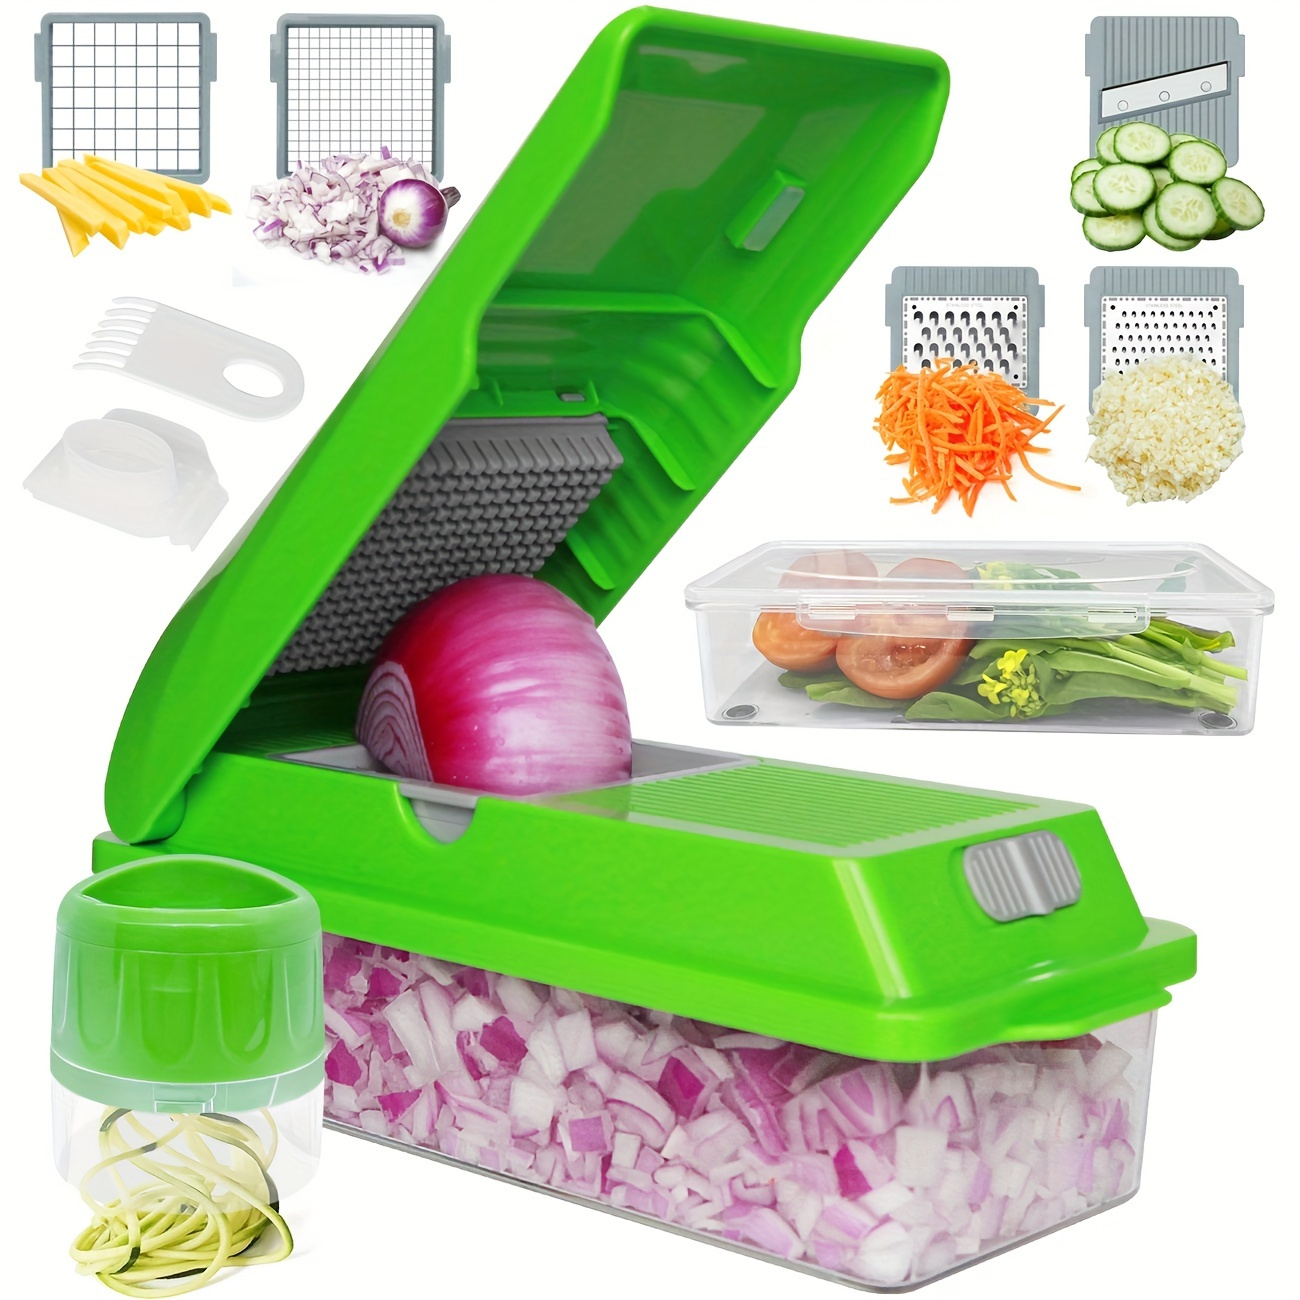 Gladicer Manual Food Chopper, Handheld Vegetables Processor Dicer